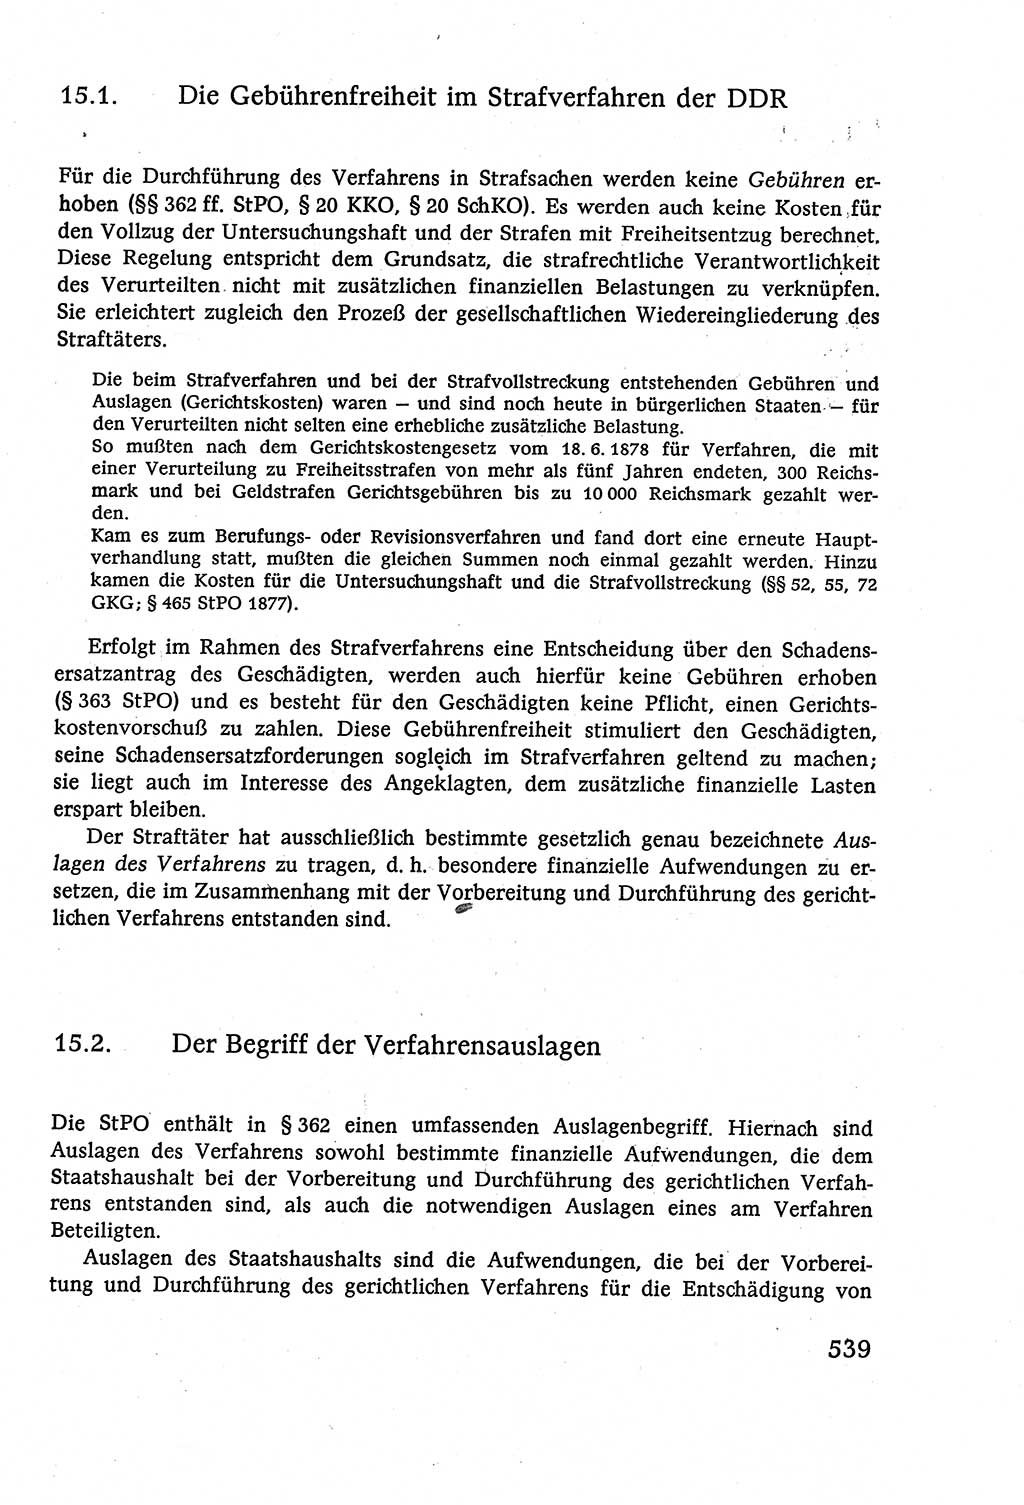 Strafverfahrensrecht [Deutsche Demokratische Republik (DDR)], Lehrbuch 1977, Seite 539 (Strafverf.-R. DDR Lb. 1977, S. 539)